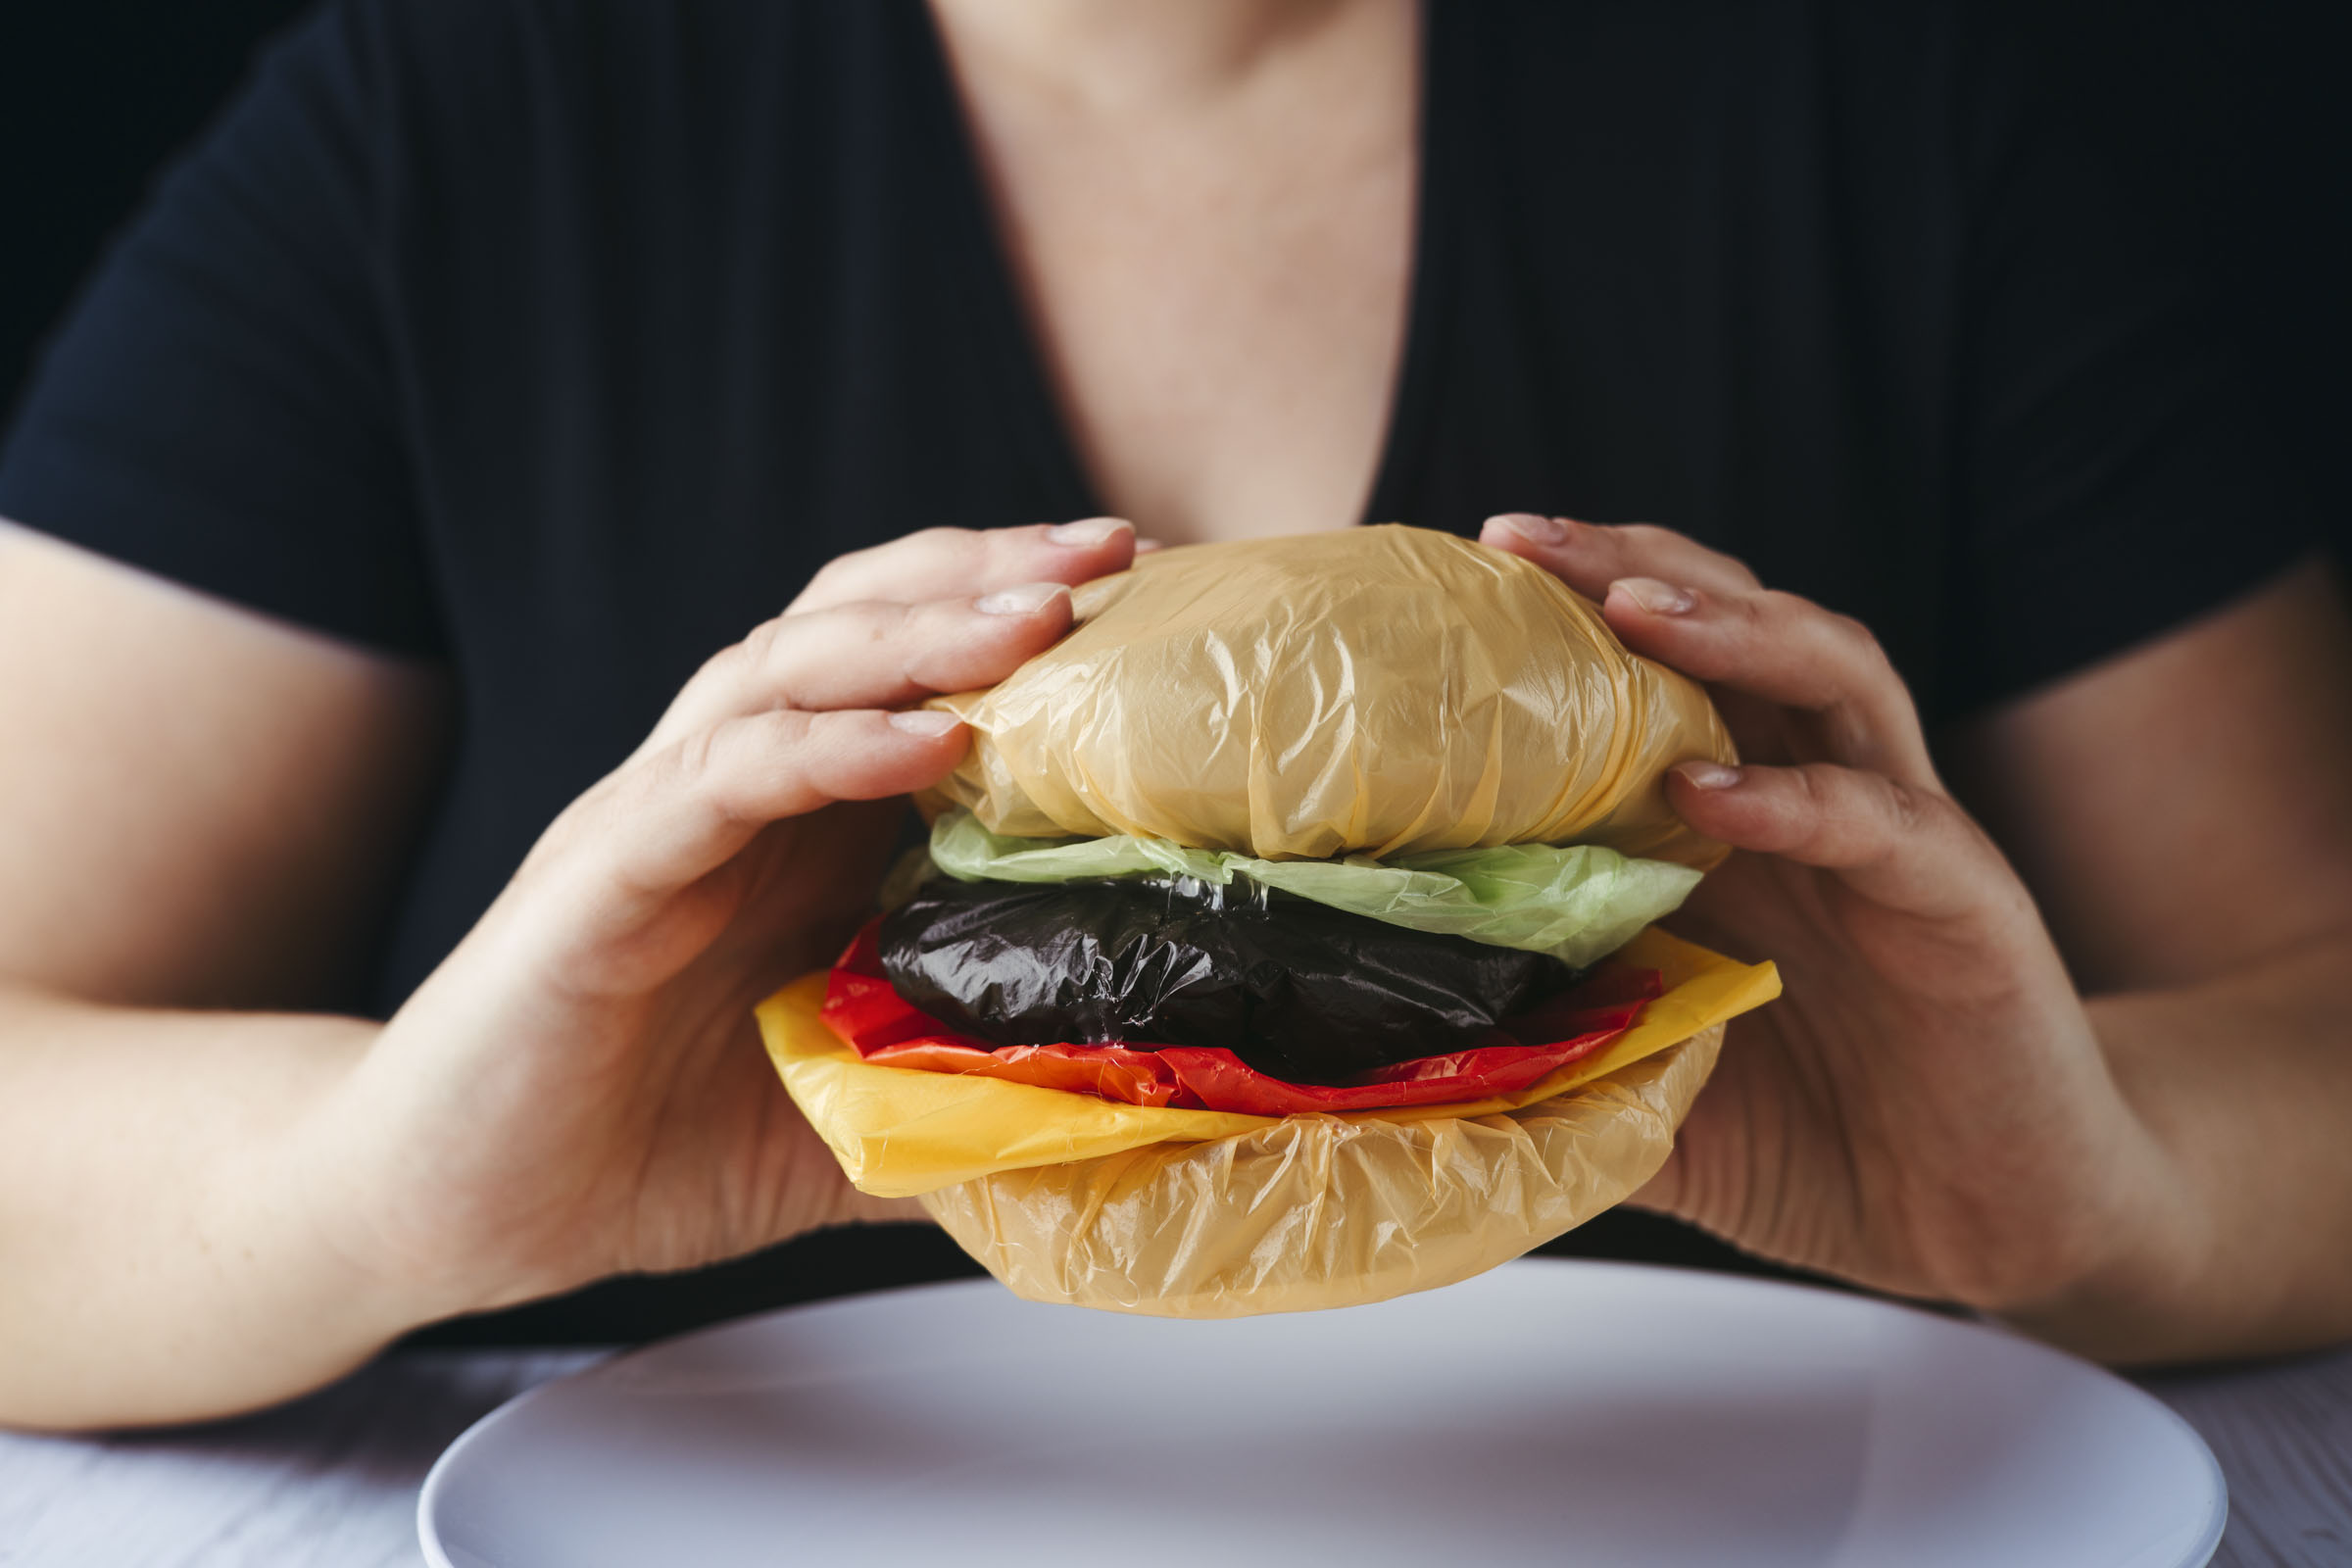 Mikroplastik im Essen: Burger aus Plastiktüten